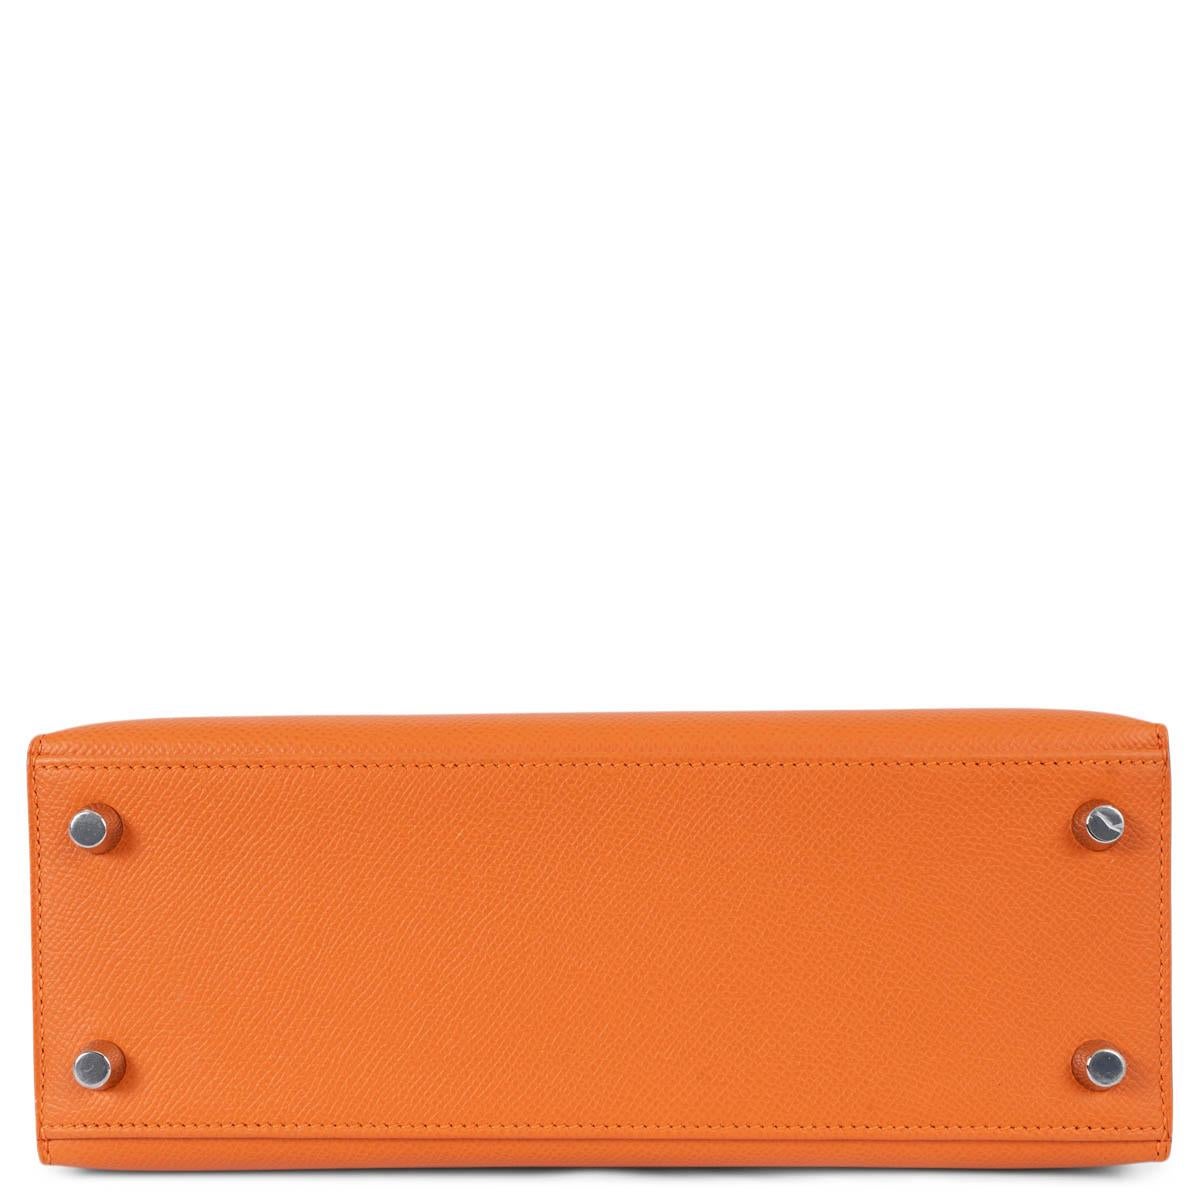 Women's HERMES orange Epsom leather KELLY 25 SELLIER Bag Phw For Sale